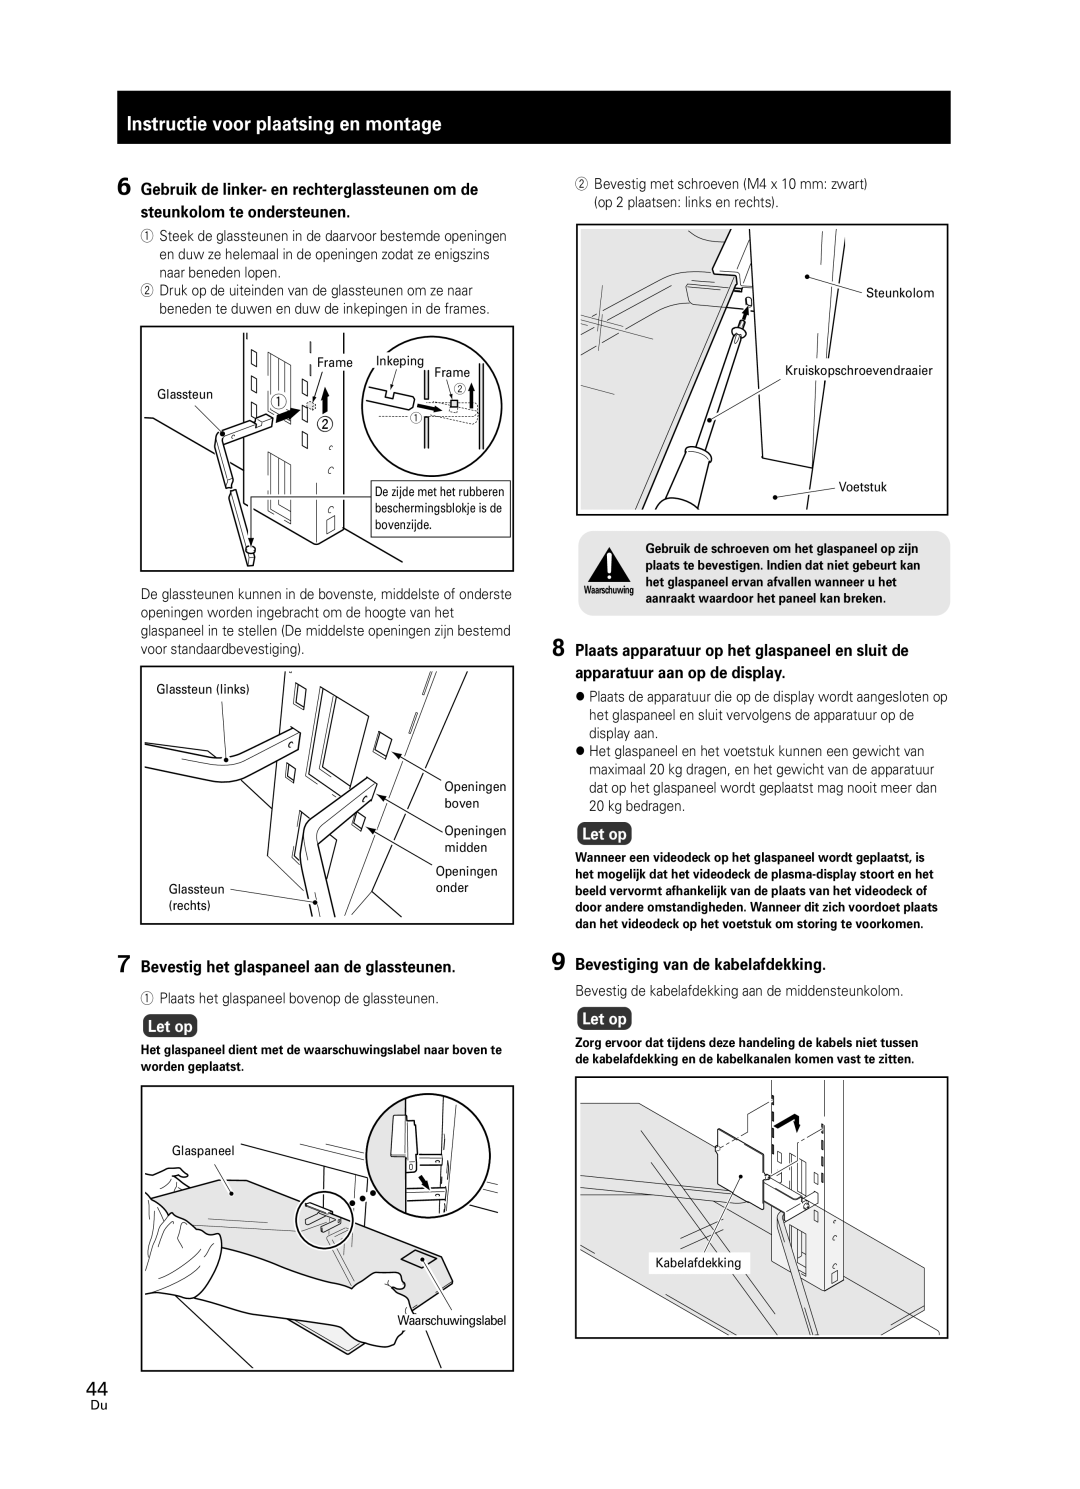 Pioneer PDK-FS05 manual Instructie voor plaatsing en montage, 7Bevestig het glaspaneel aan de glassteunen, Let op 